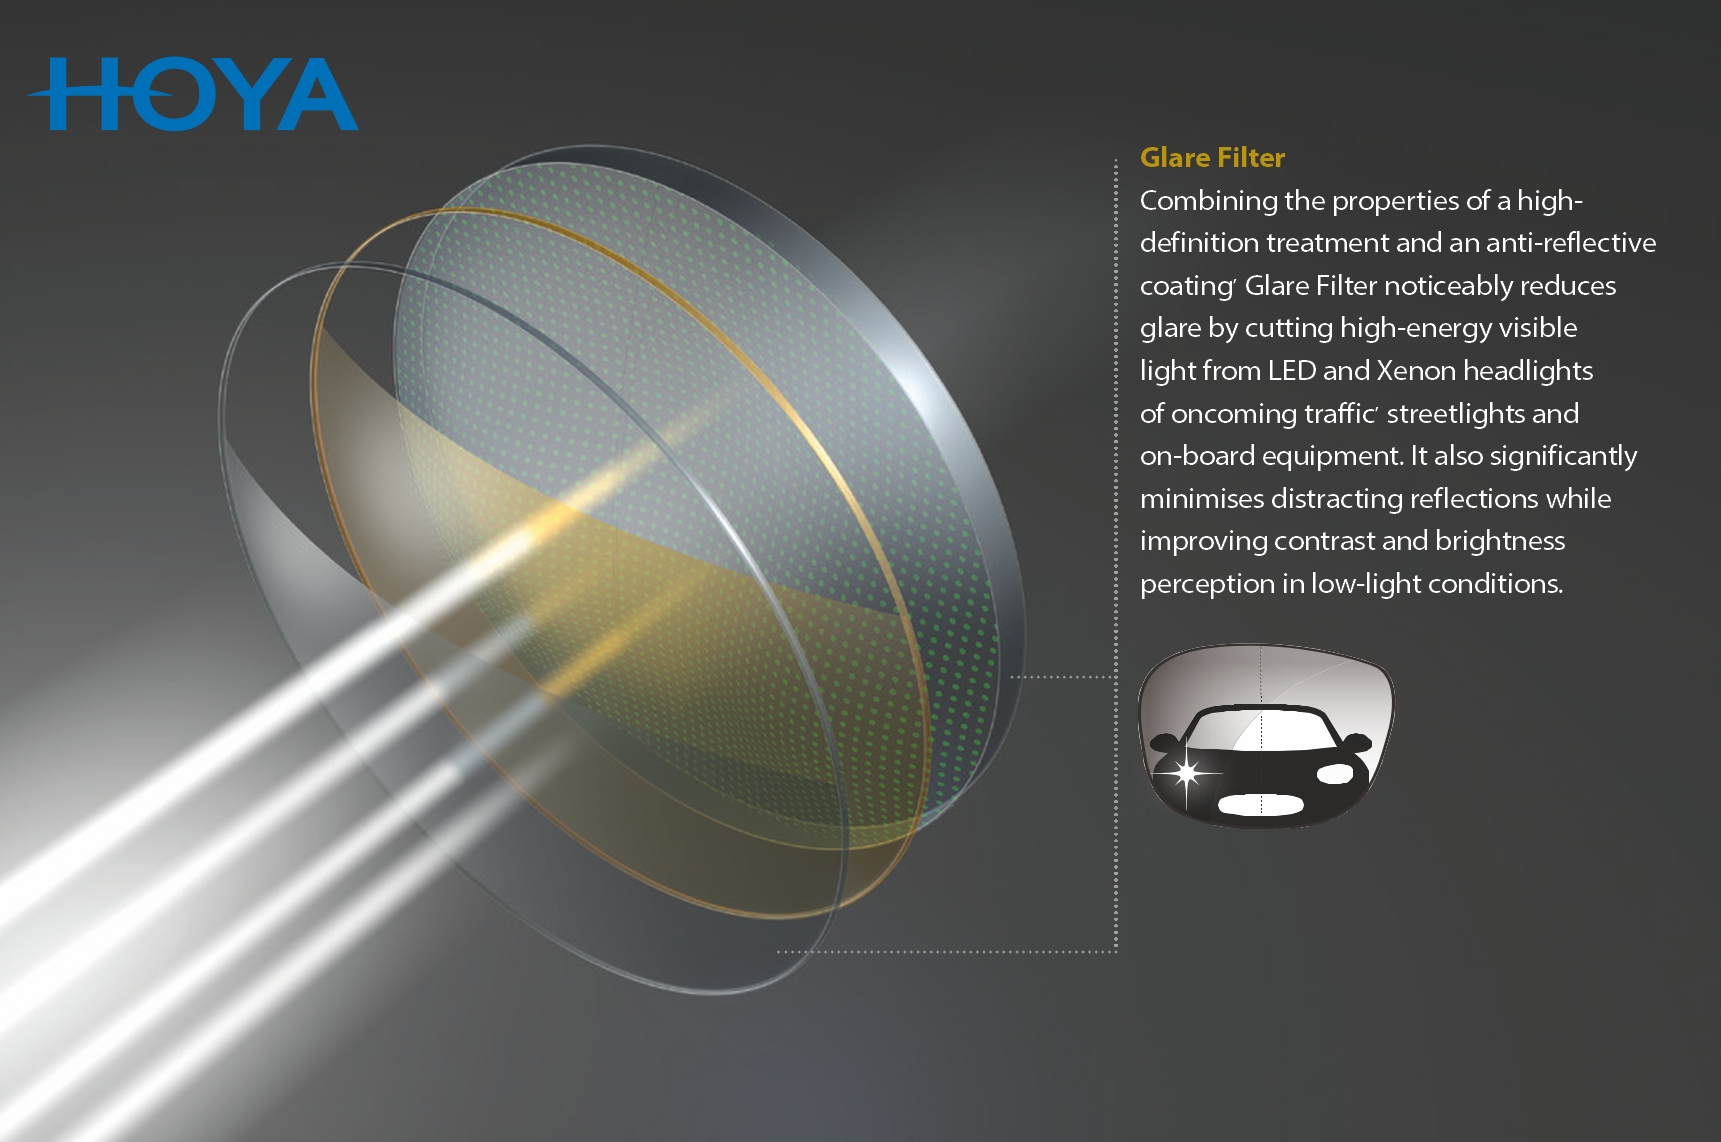 Hoya Glare Filter, night driving, Oodo™